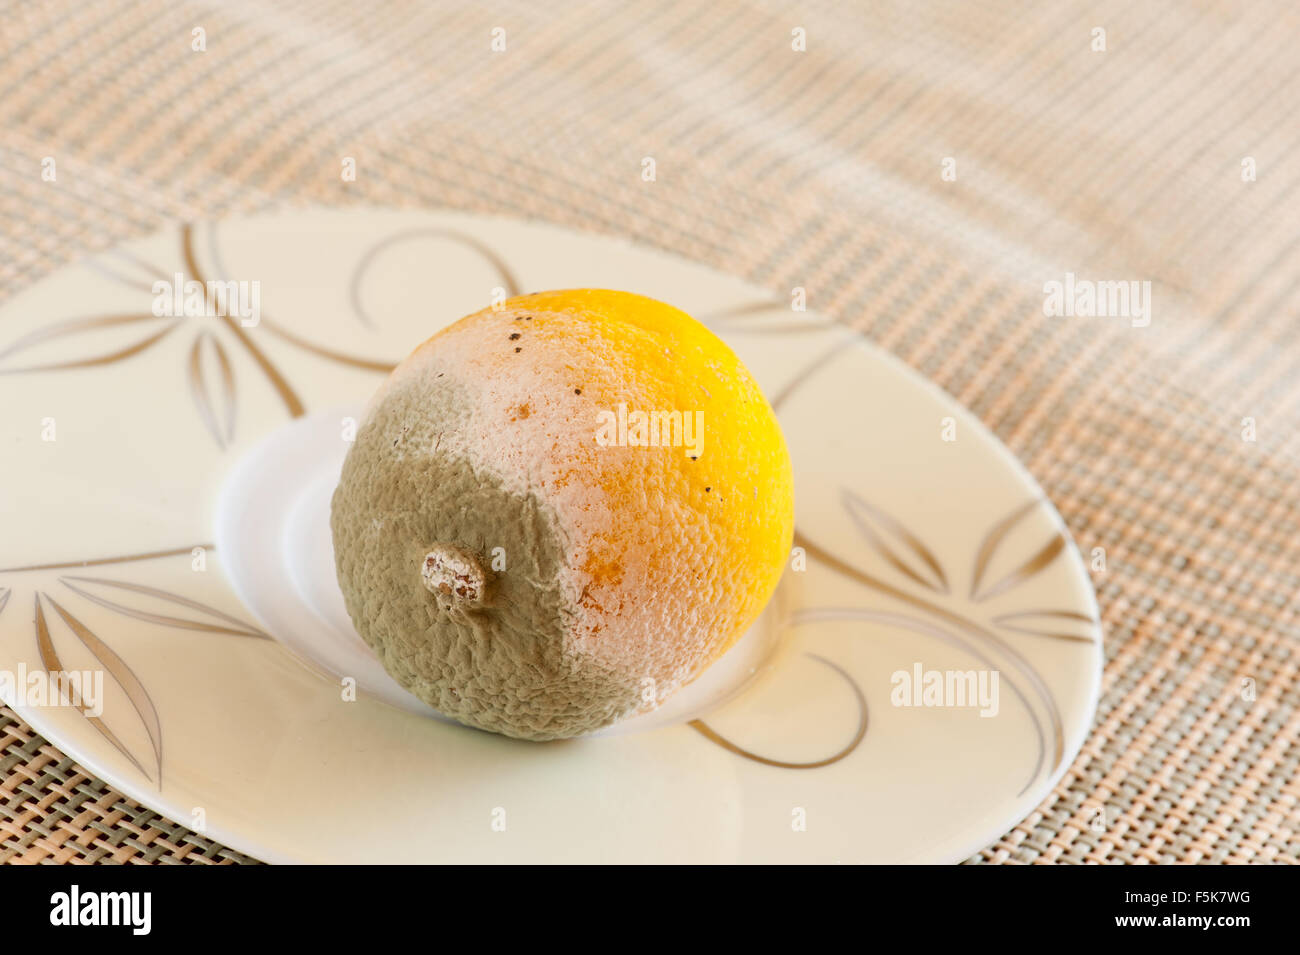 La muffa verde sulla frutta limone giacente su un piccolo piatto sul tavolo di legno, ammuffito e decadeva male lo spreco di cibo, un limone garbage ... Foto Stock